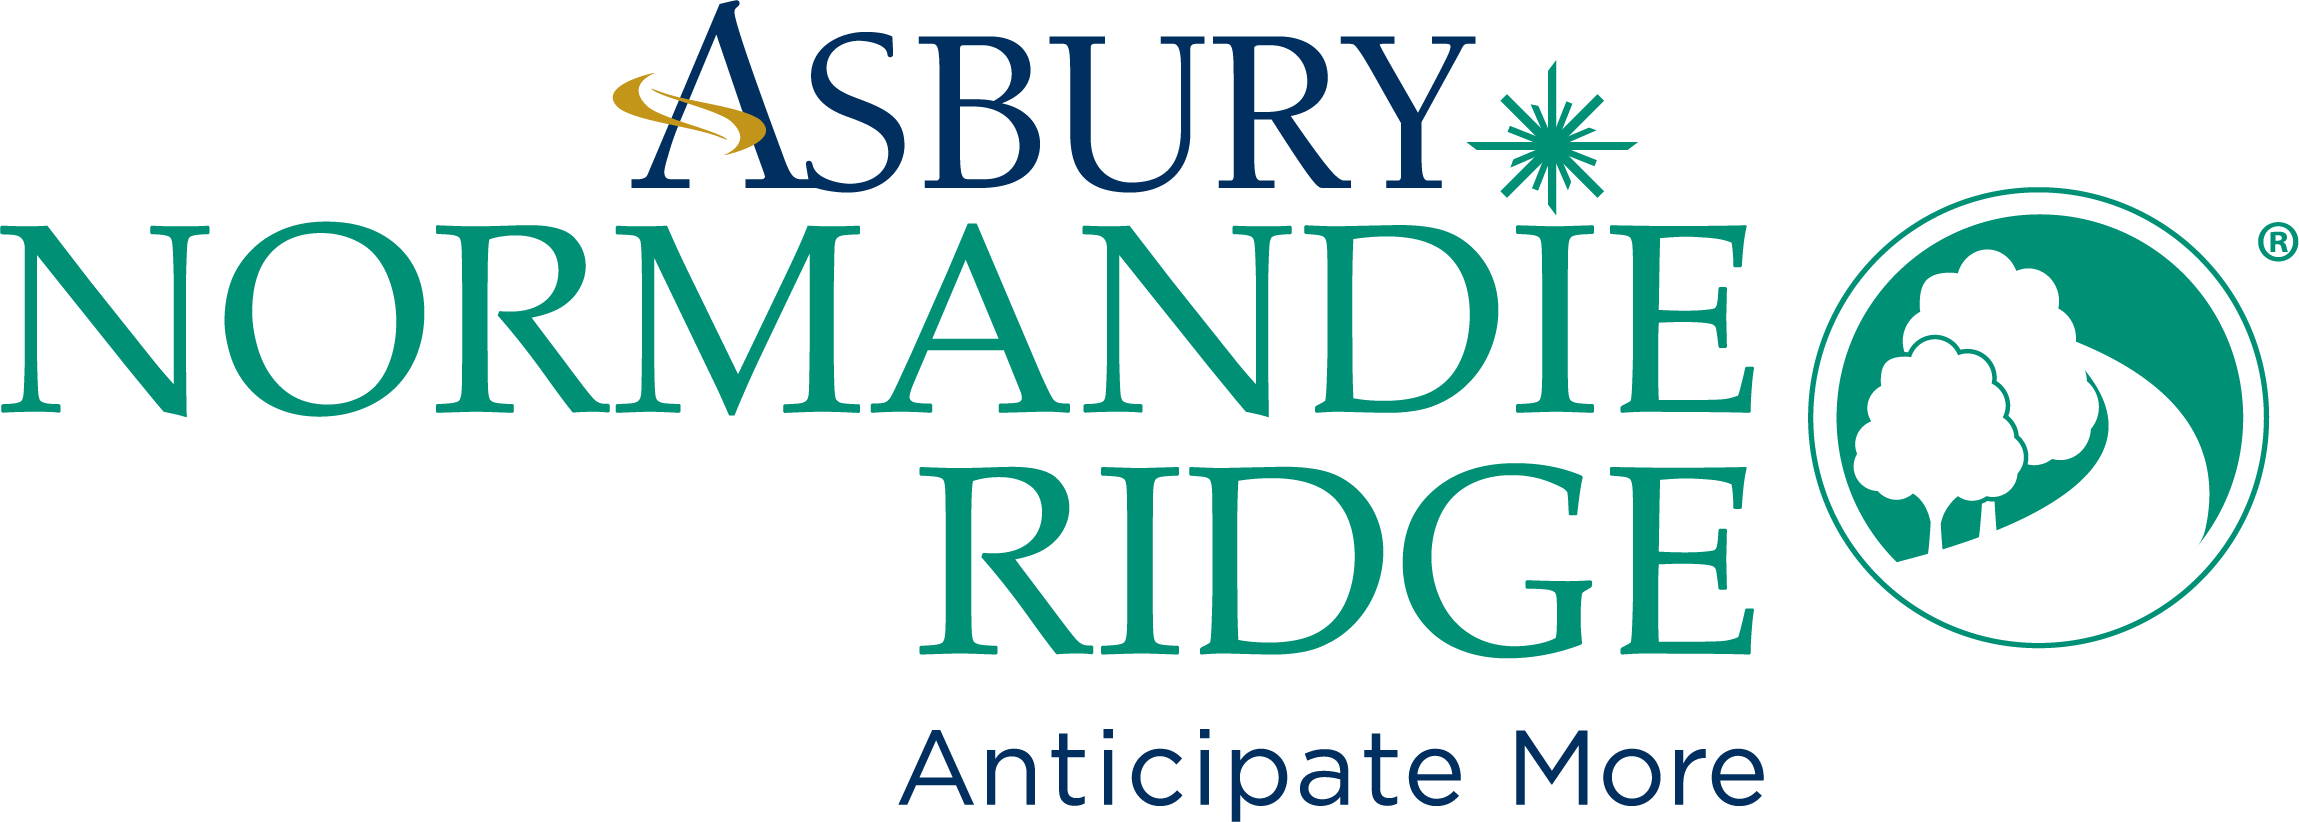 asbury normandie ridge color logo